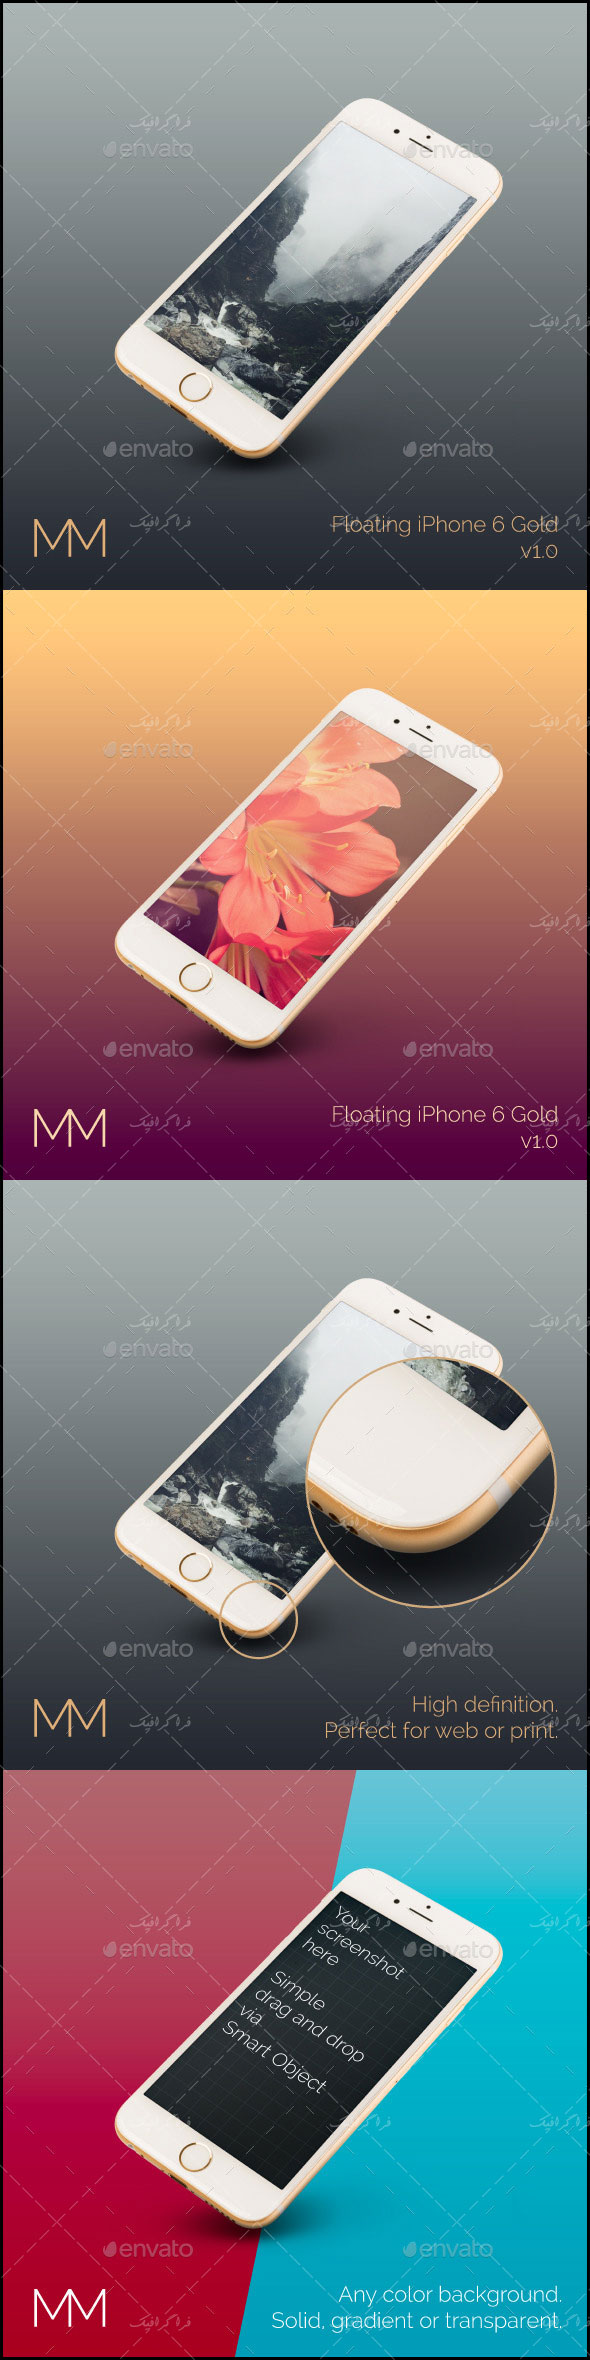 ماک آپ فتوشاپ گوشی iPhone 6 طلایی